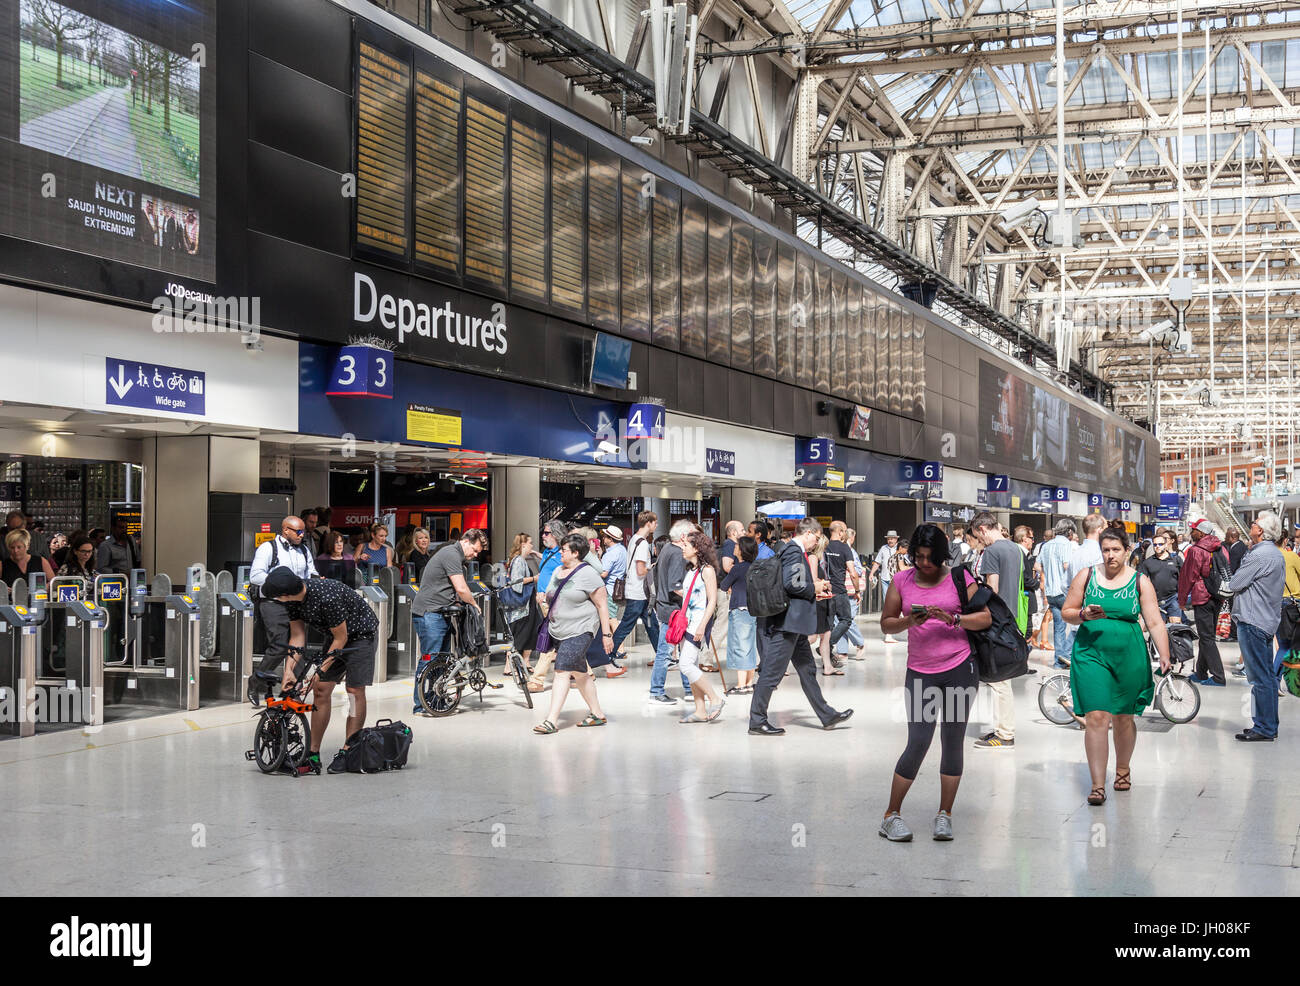 Passeggeri, concourse, scheda di partenze e la piattaforma ingressi nella stazione di Waterloo, una grande stazione terminale a Lambeth, Londra centrale. Foto Stock